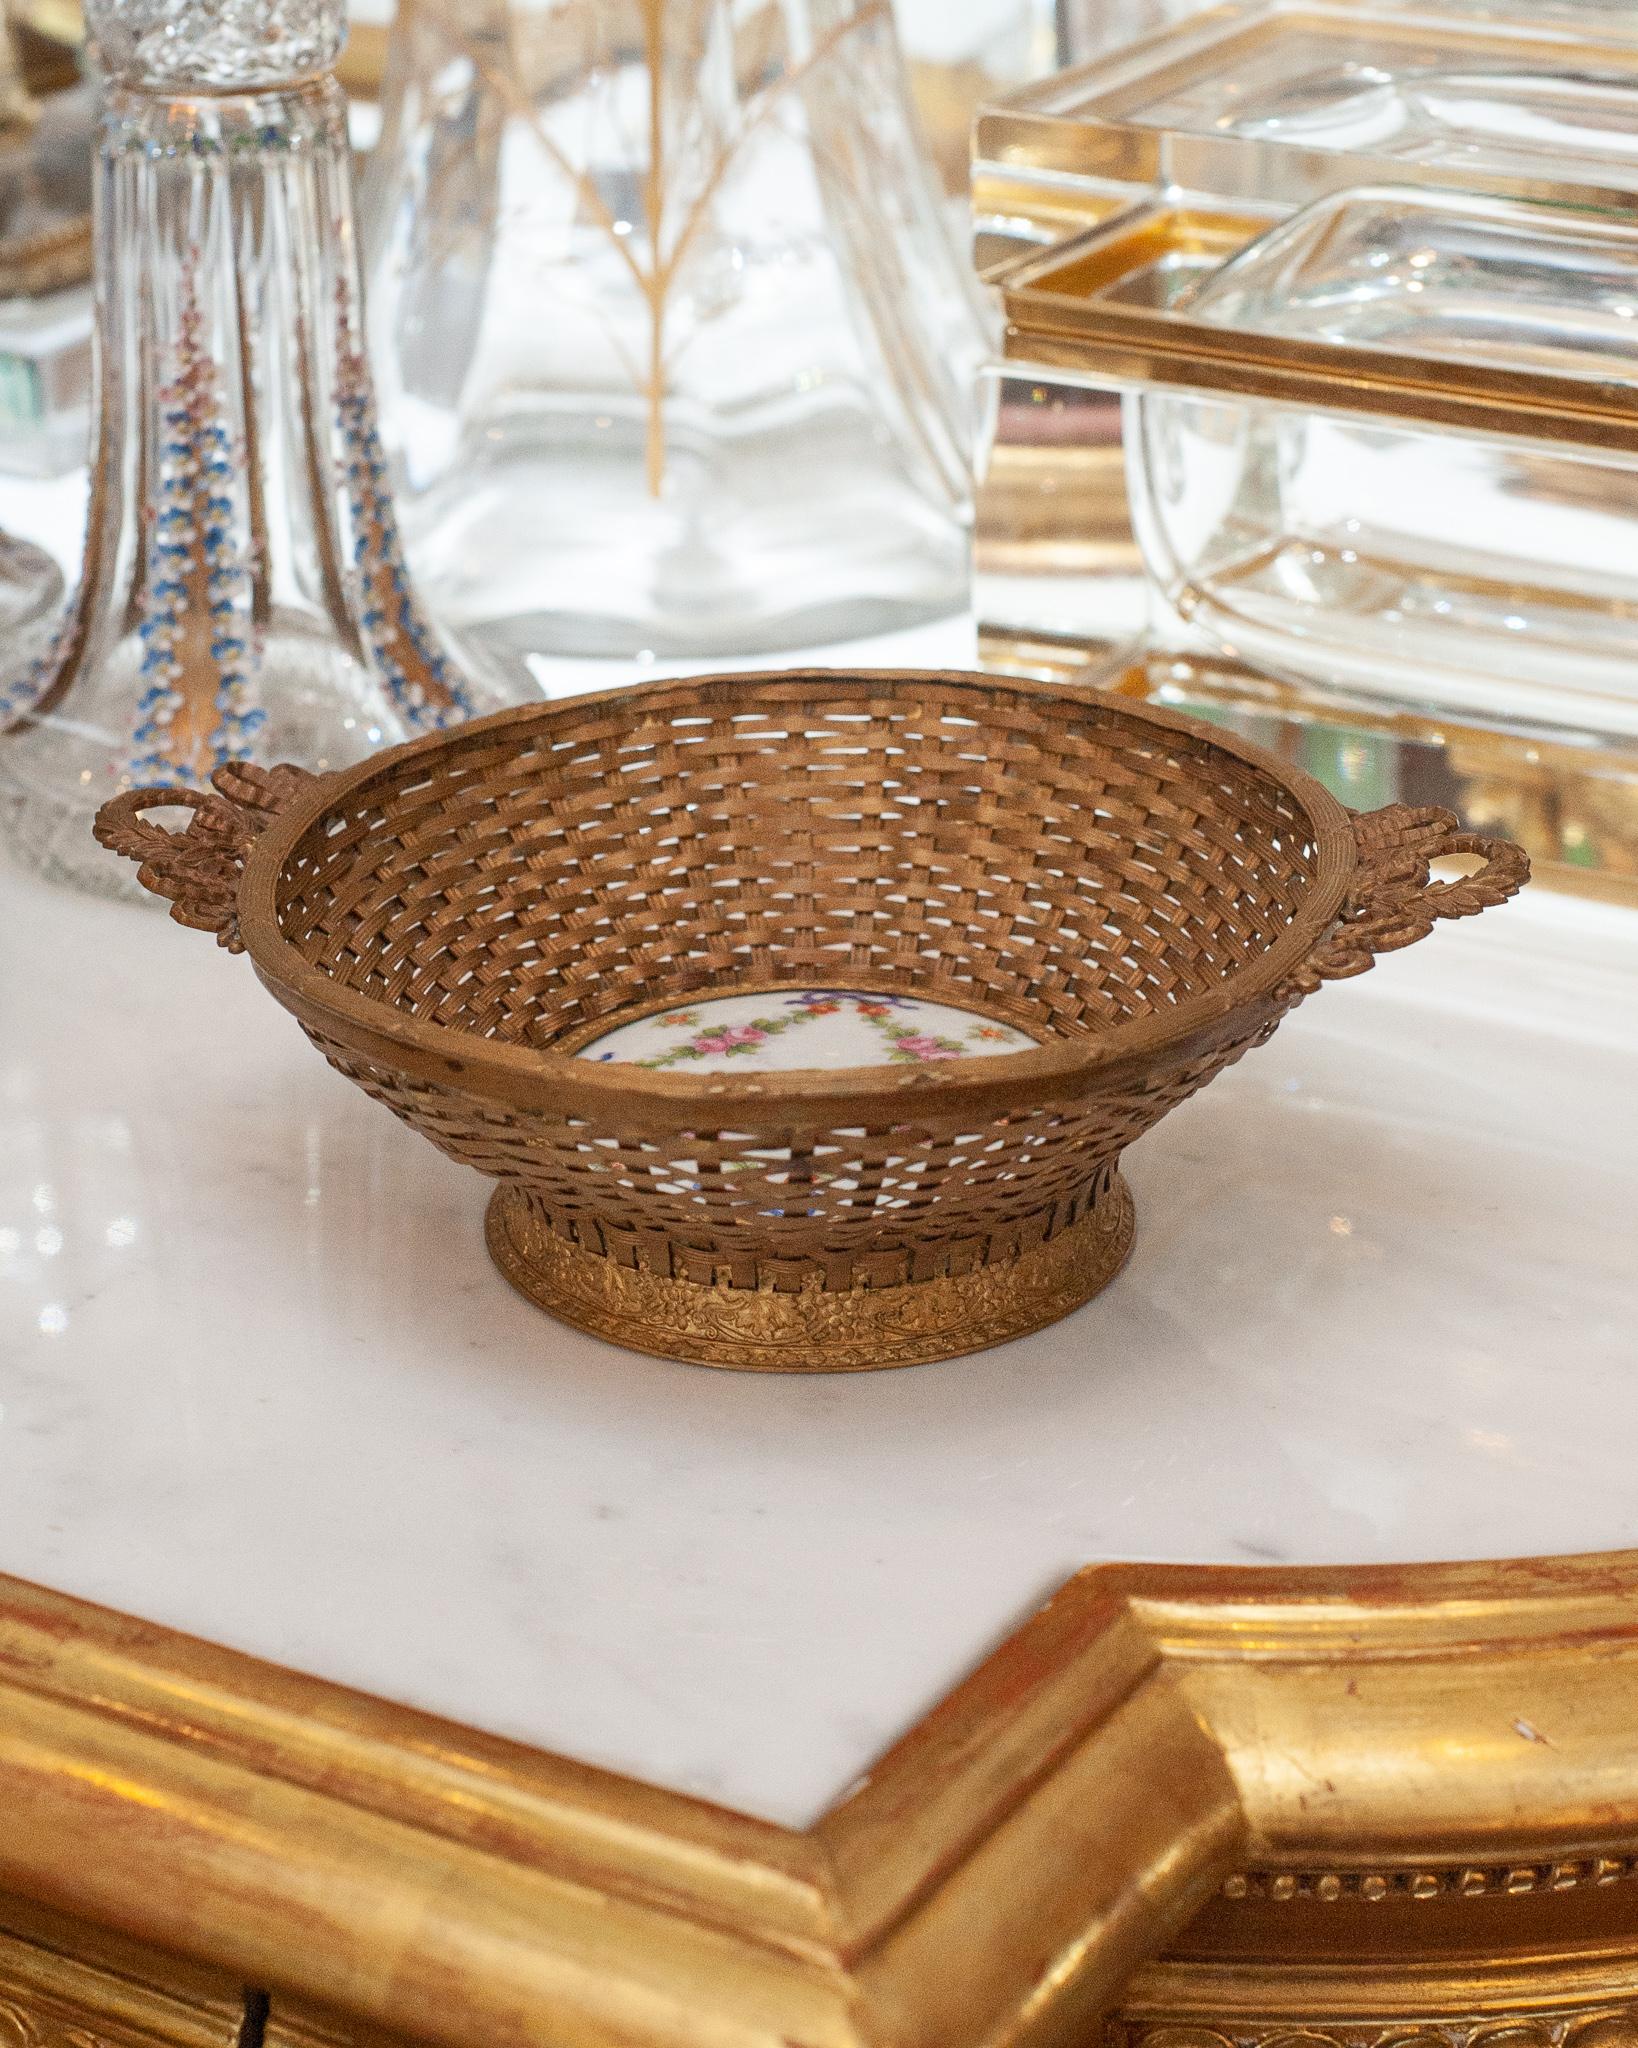 Ein wunderschöner antiker französischer geflochtener Bronzekorb mit einer handbedruckten Porzellanplakette in der Mitte. Dieser Korb ist wunderschön und filigran gearbeitet und ist eine perfekte Ergänzung für jeden Tisch.